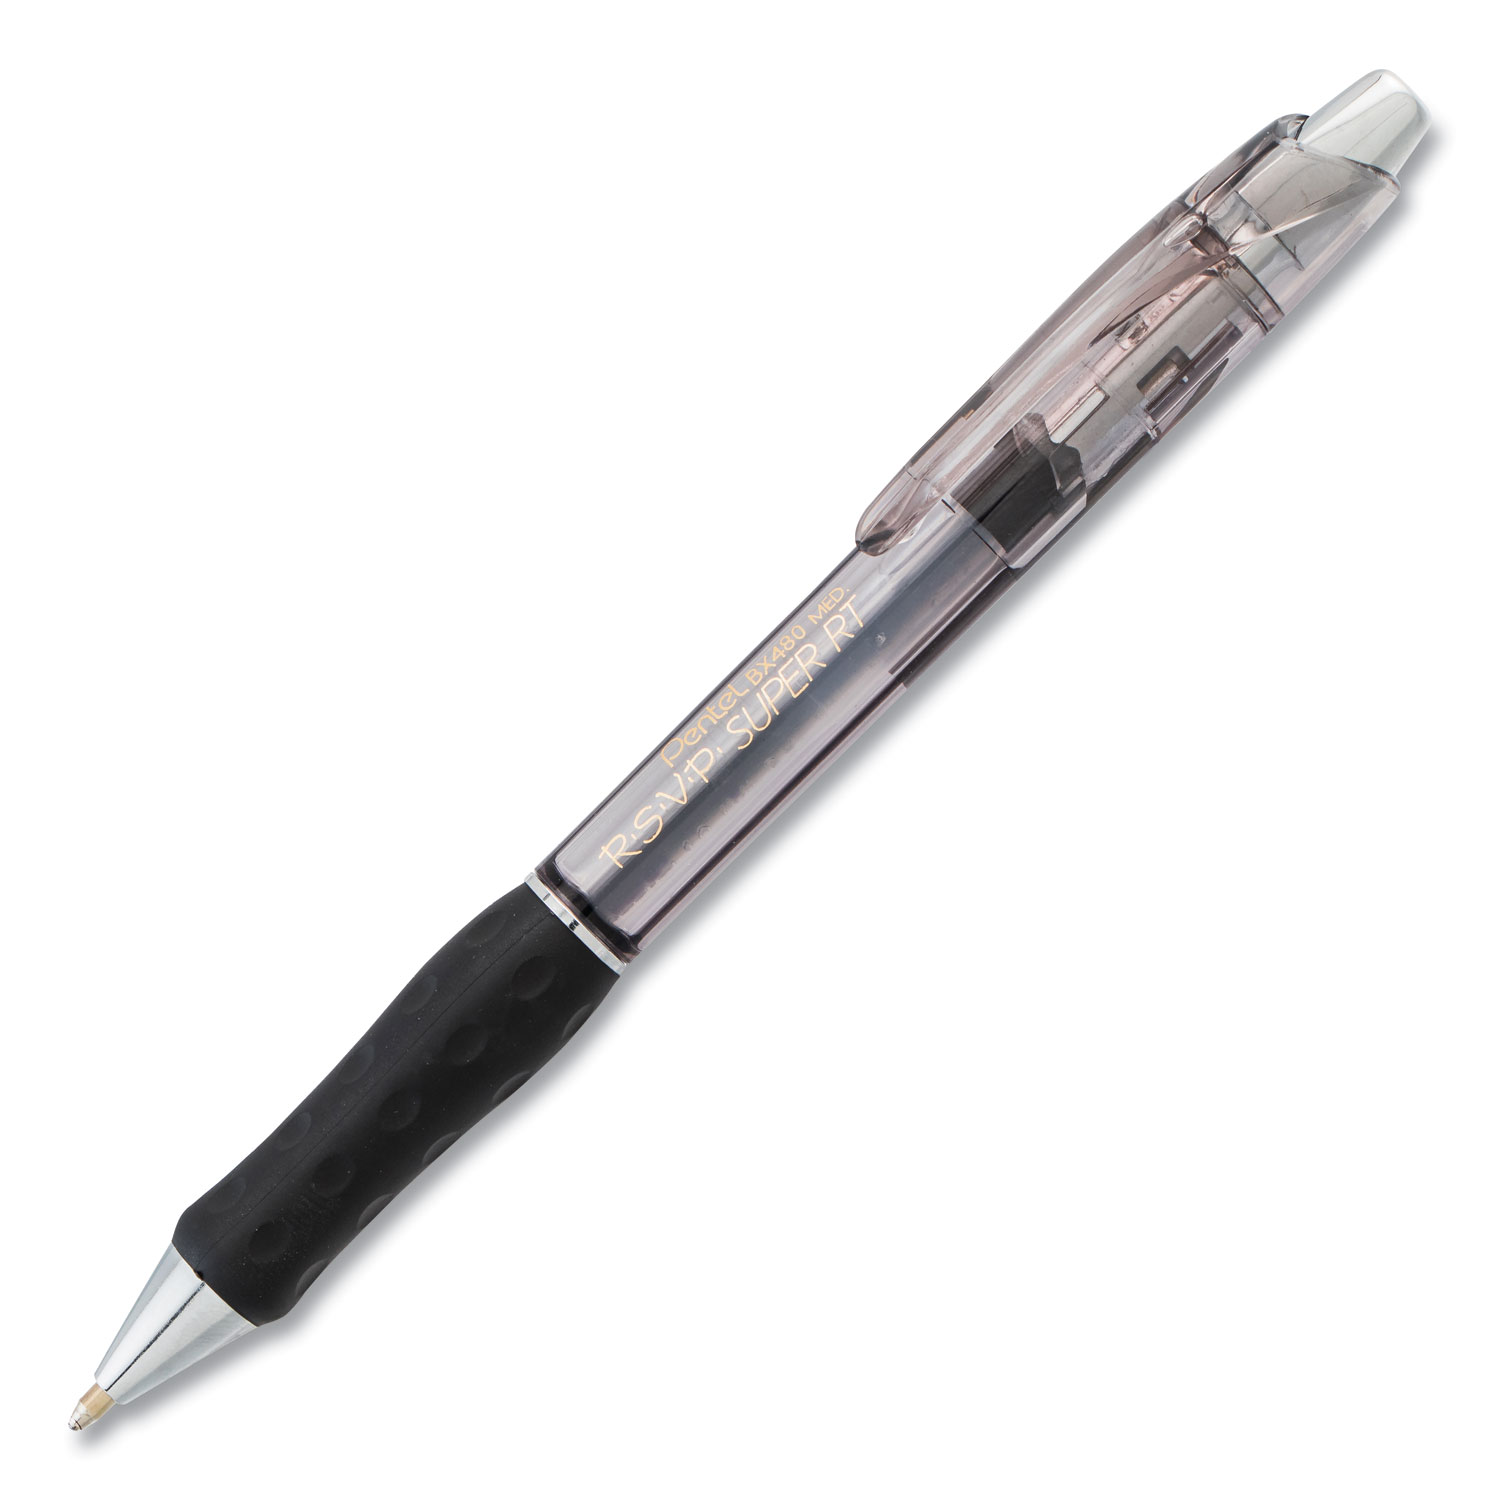  Pentel BX480-A R.S.V.P. Super RT Retractable Ballpoint Pen, 1 mm, Black Ink/Barrel, Dozen (PENBX480A) 